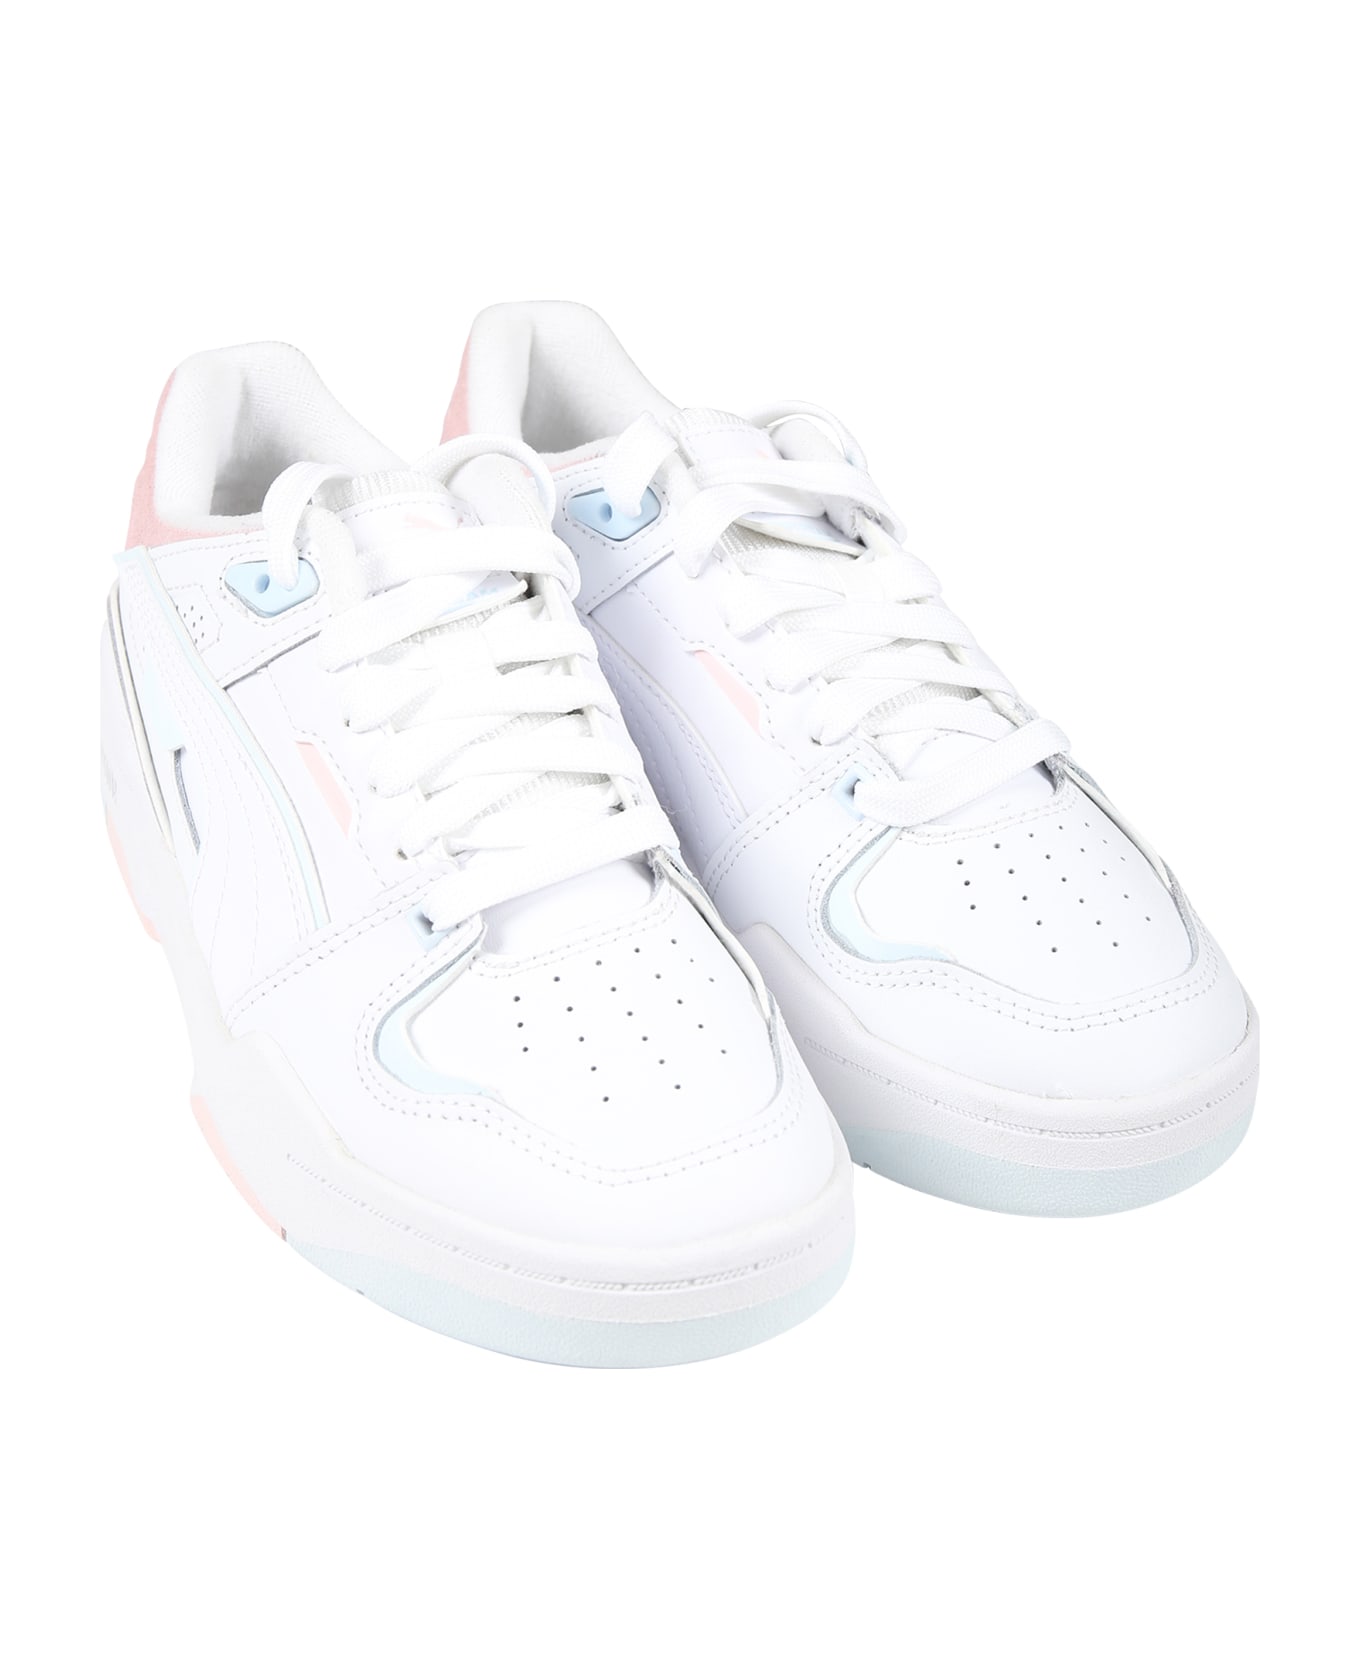 Puma White Slipstream Bball Jr Sneakers For Girl - White シューズ